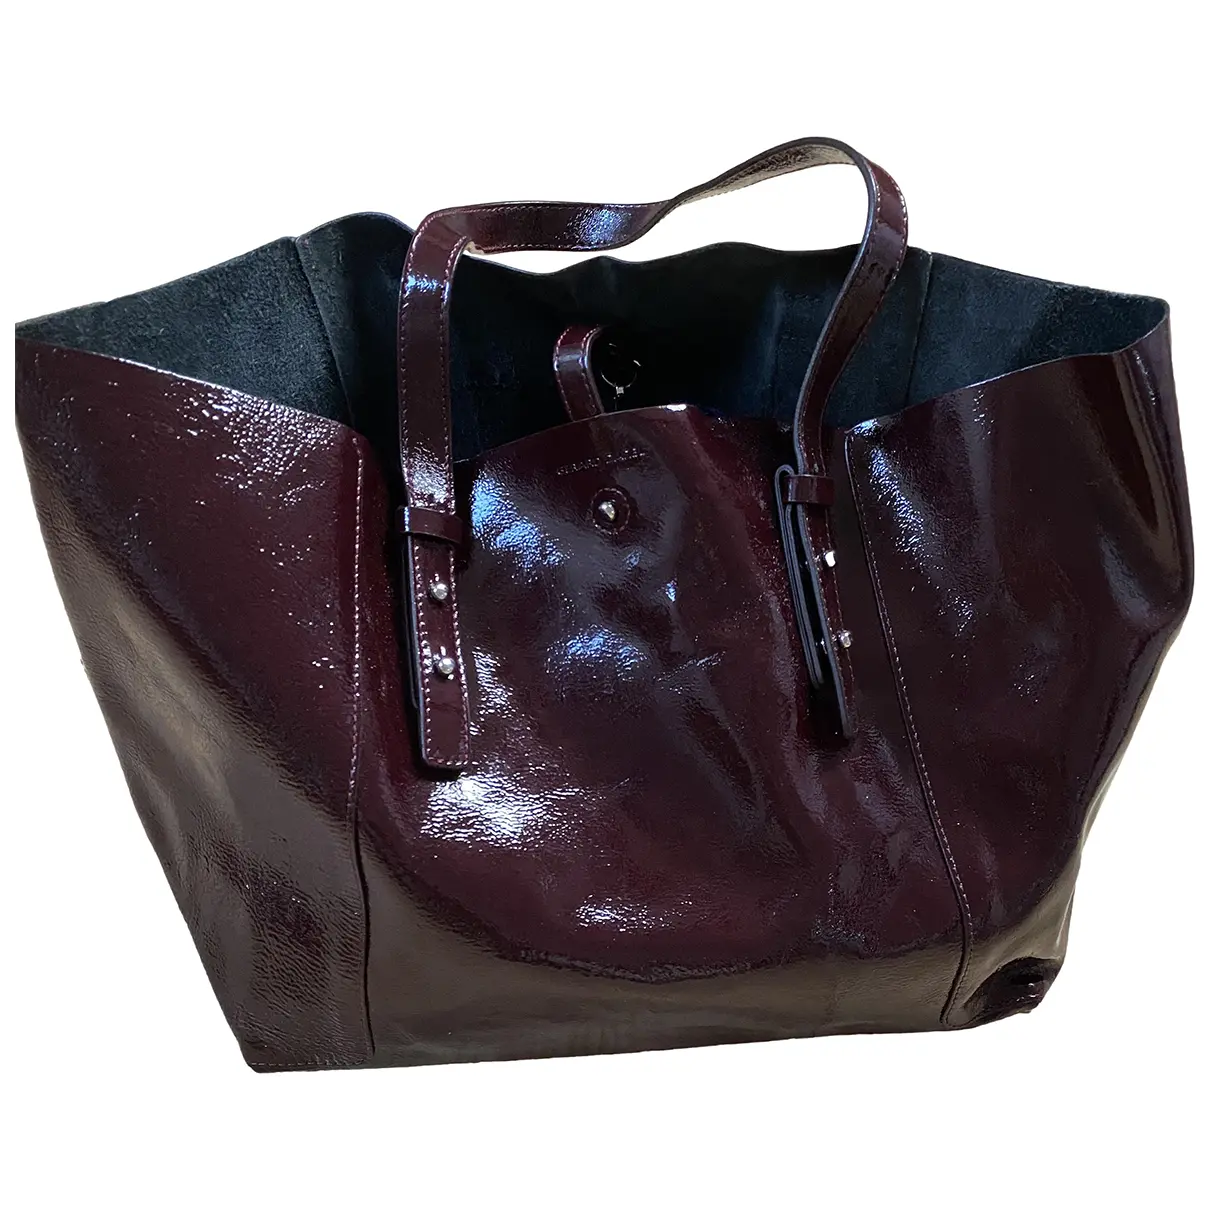 Simple Bag patent leather handbag Gerard Darel